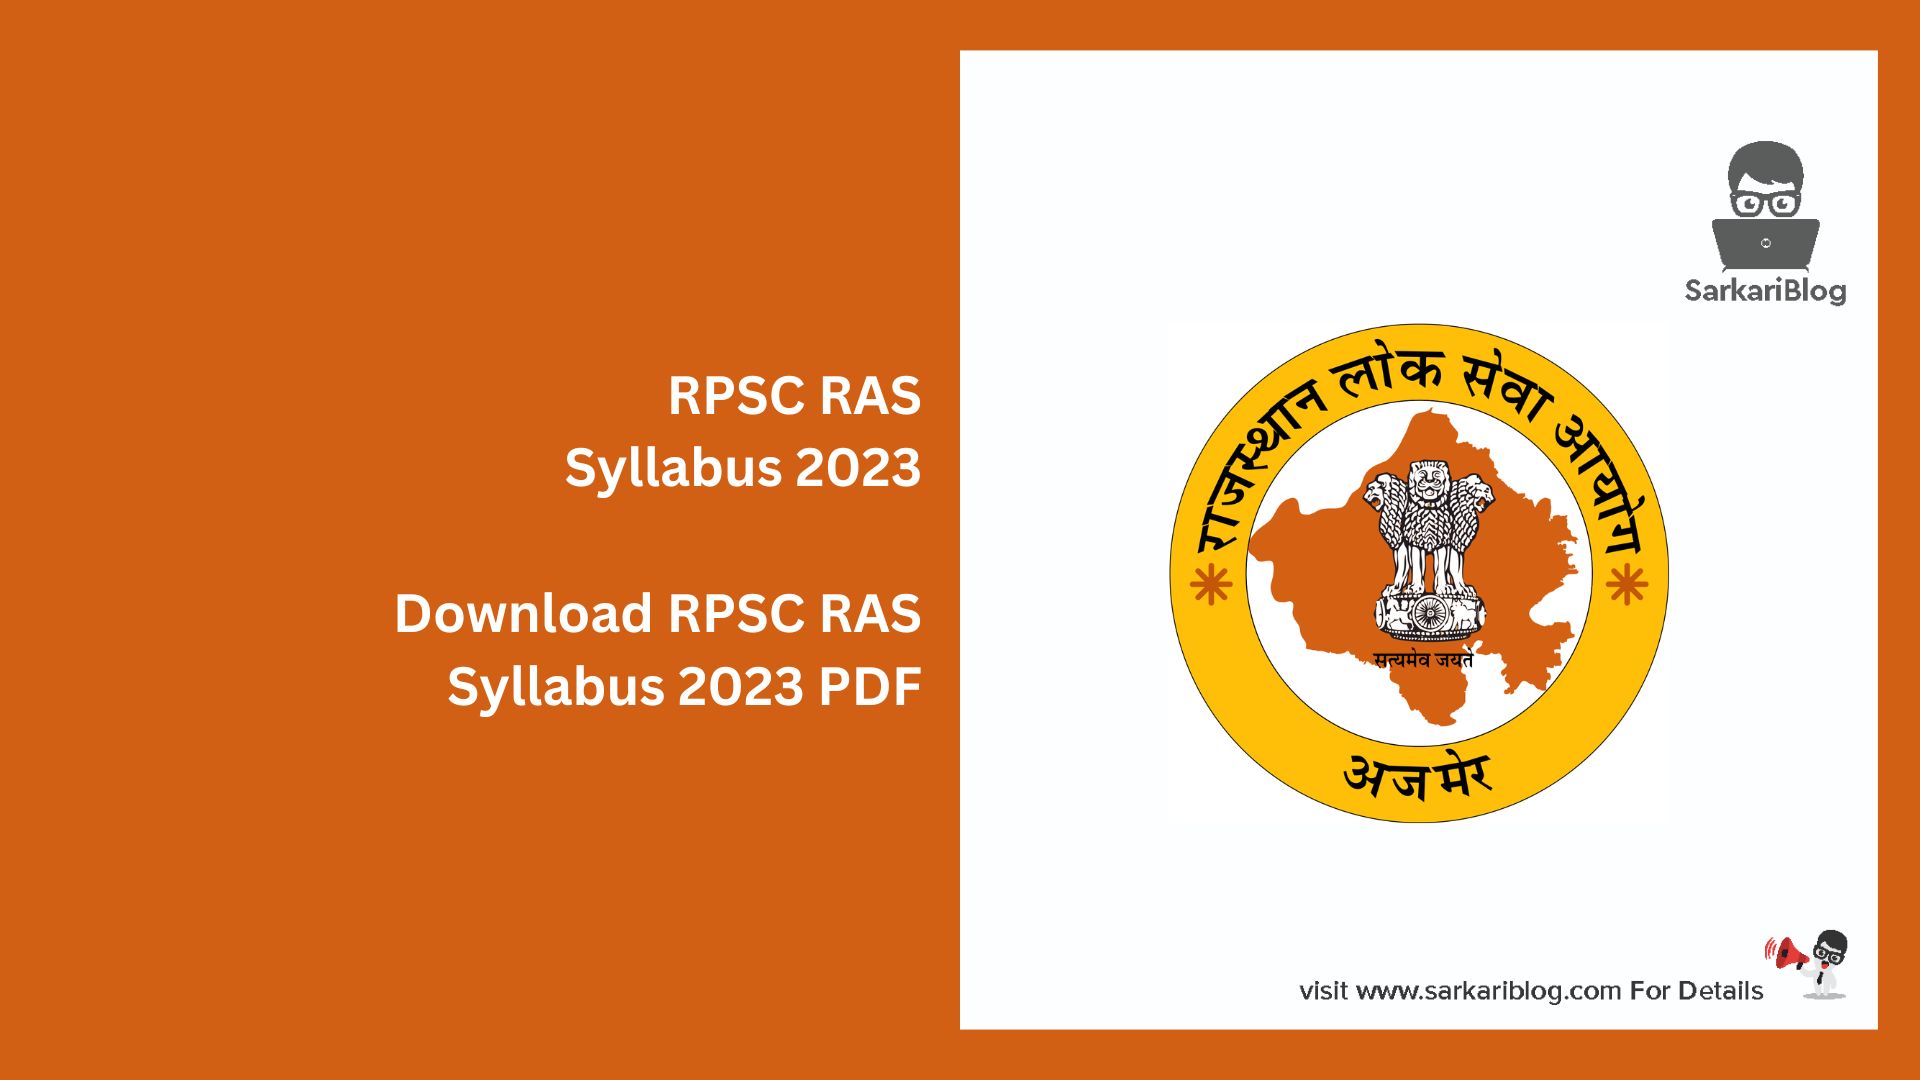 RPSC RAS Syllabus 2023